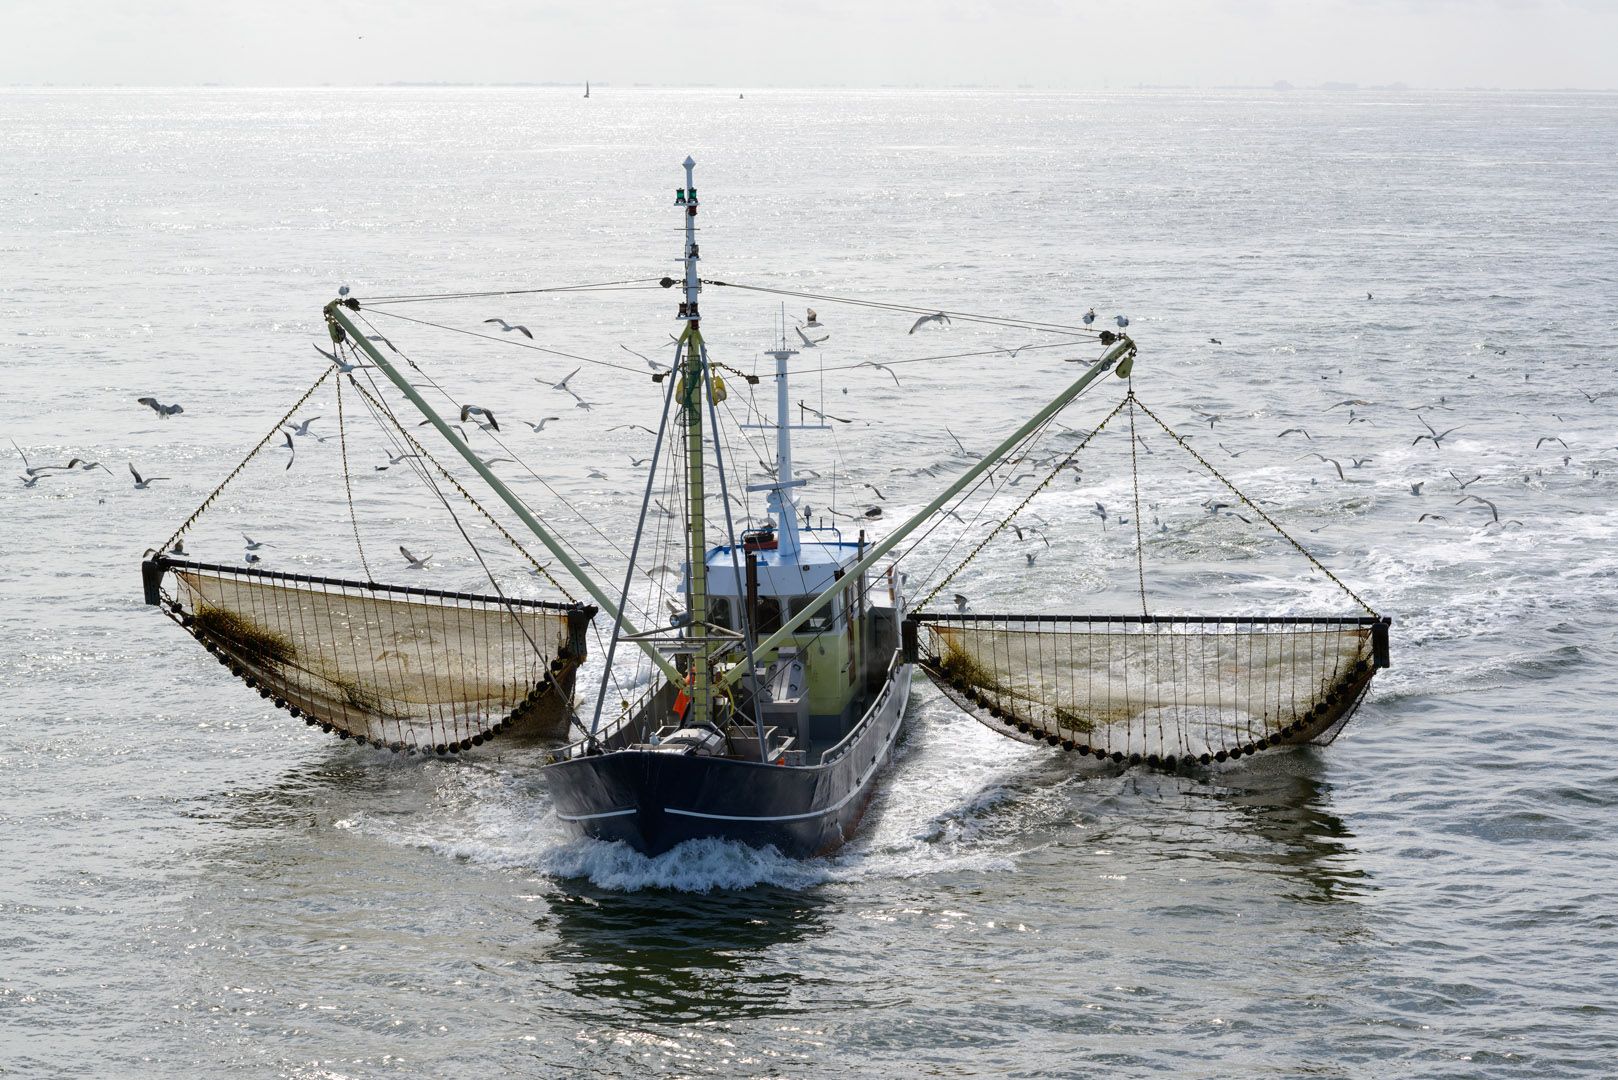 Pesca eléctrica, estará prohibida en aguas comunitarias / Foto: UE